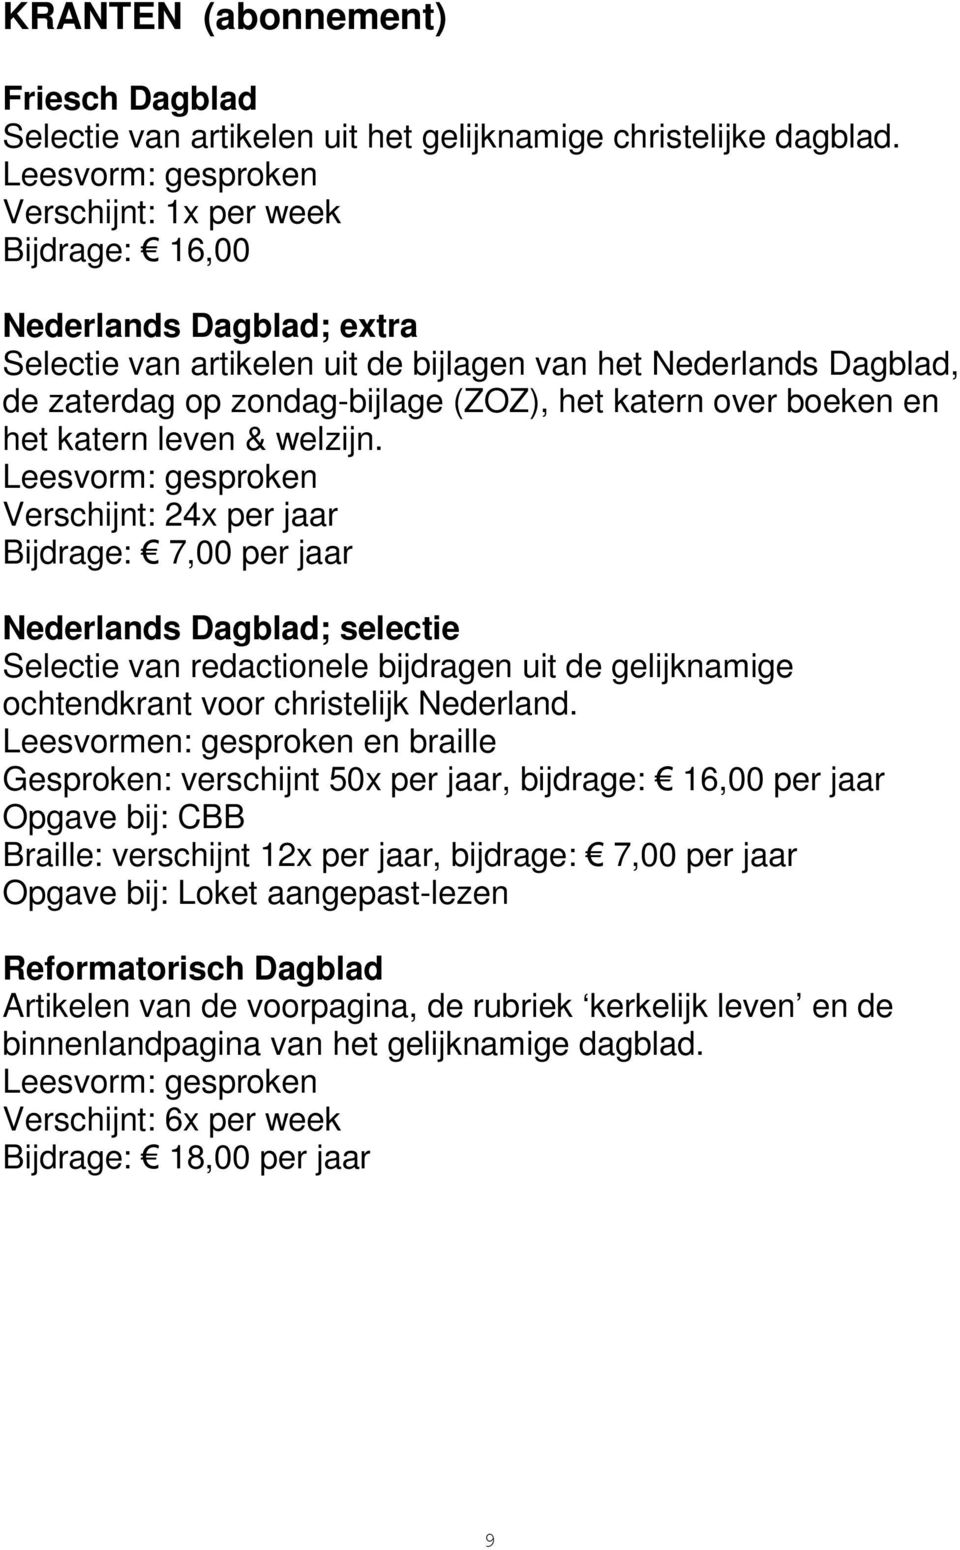 katern leven & welzijn. Verschijnt: 24x per jaar Bijdrage: 7,00 per jaar Nederlands Dagblad; selectie Selectie van redactionele bijdragen uit de gelijknamige ochtendkrant voor christelijk Nederland.